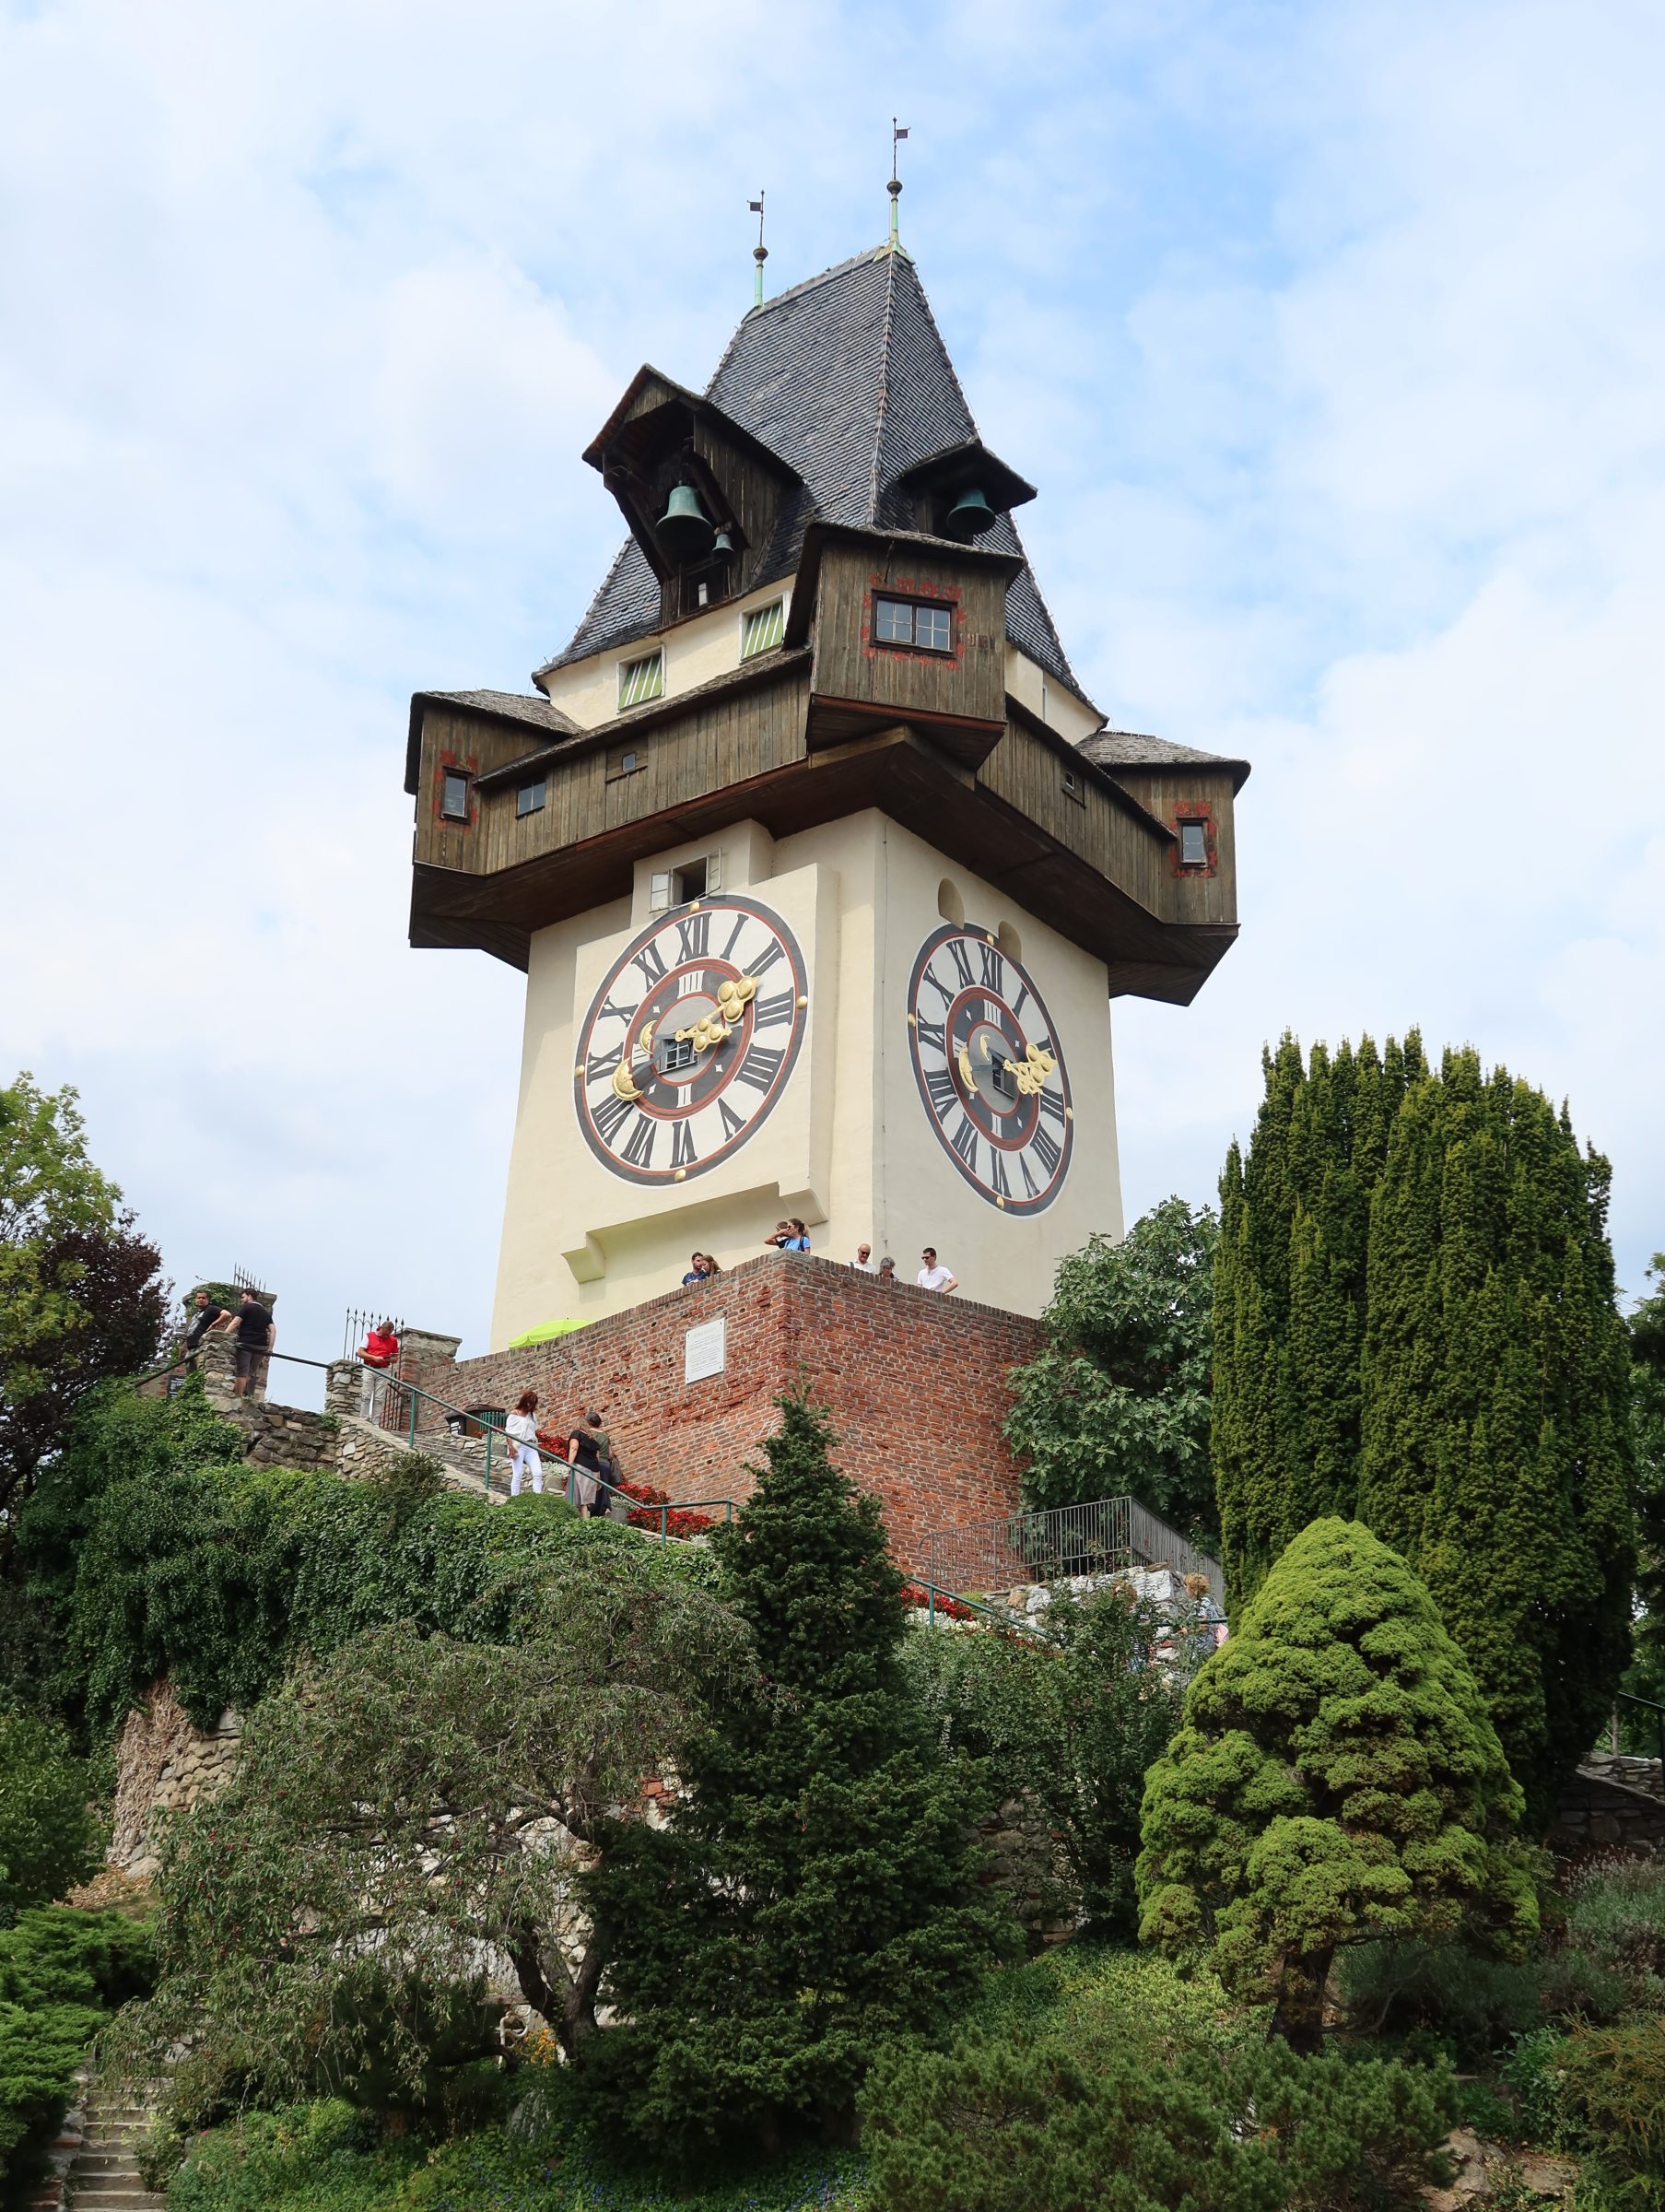 برج الساعة "Grazer Uhrturm"